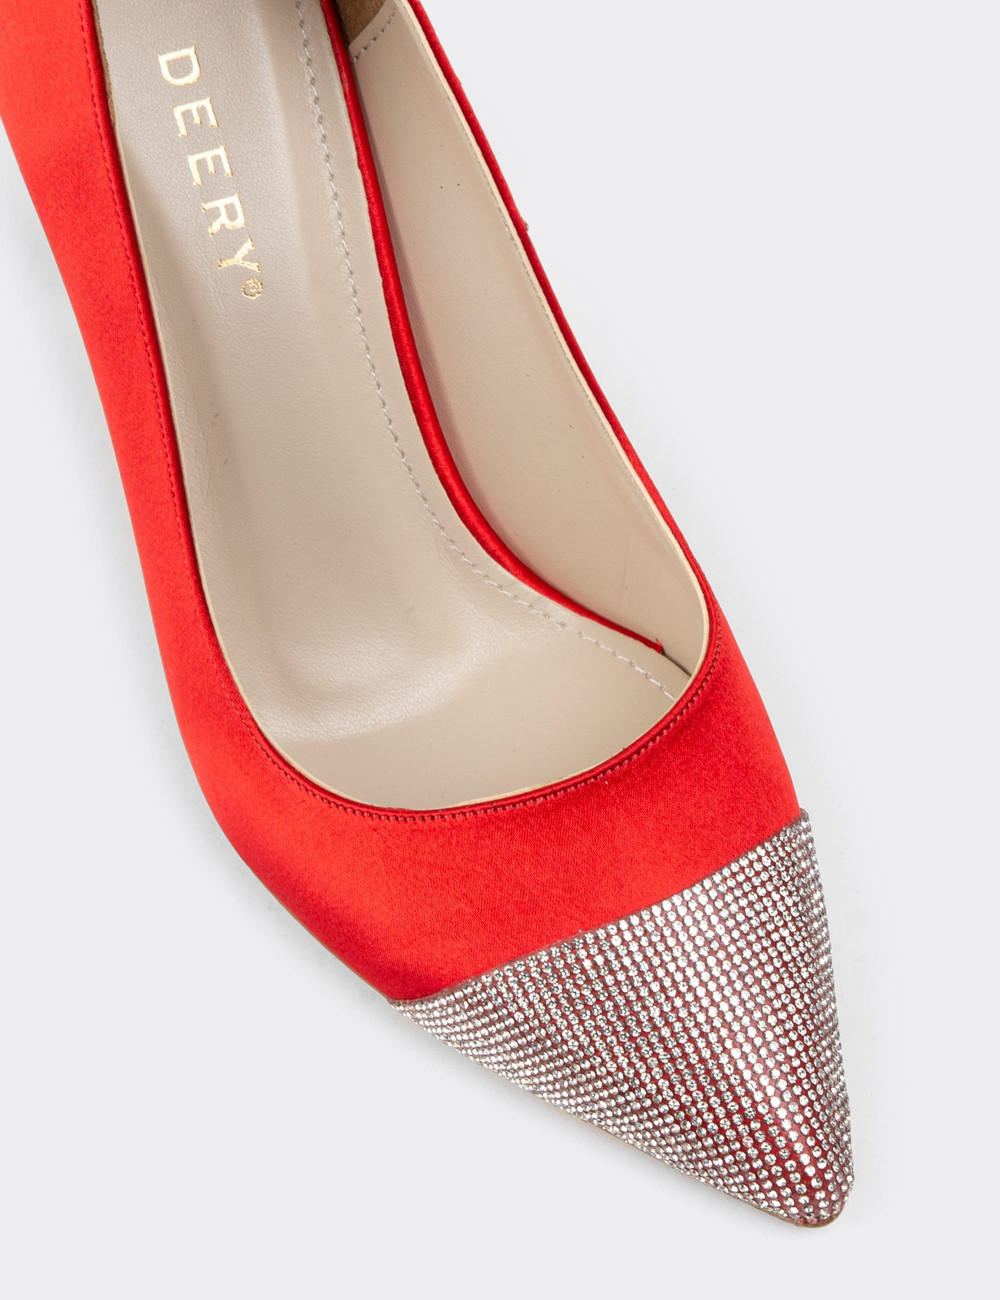 Kırmızı Saten Taşlı Stiletto Kadın Topuklu Ayakkabı - K0030ZKRMM01